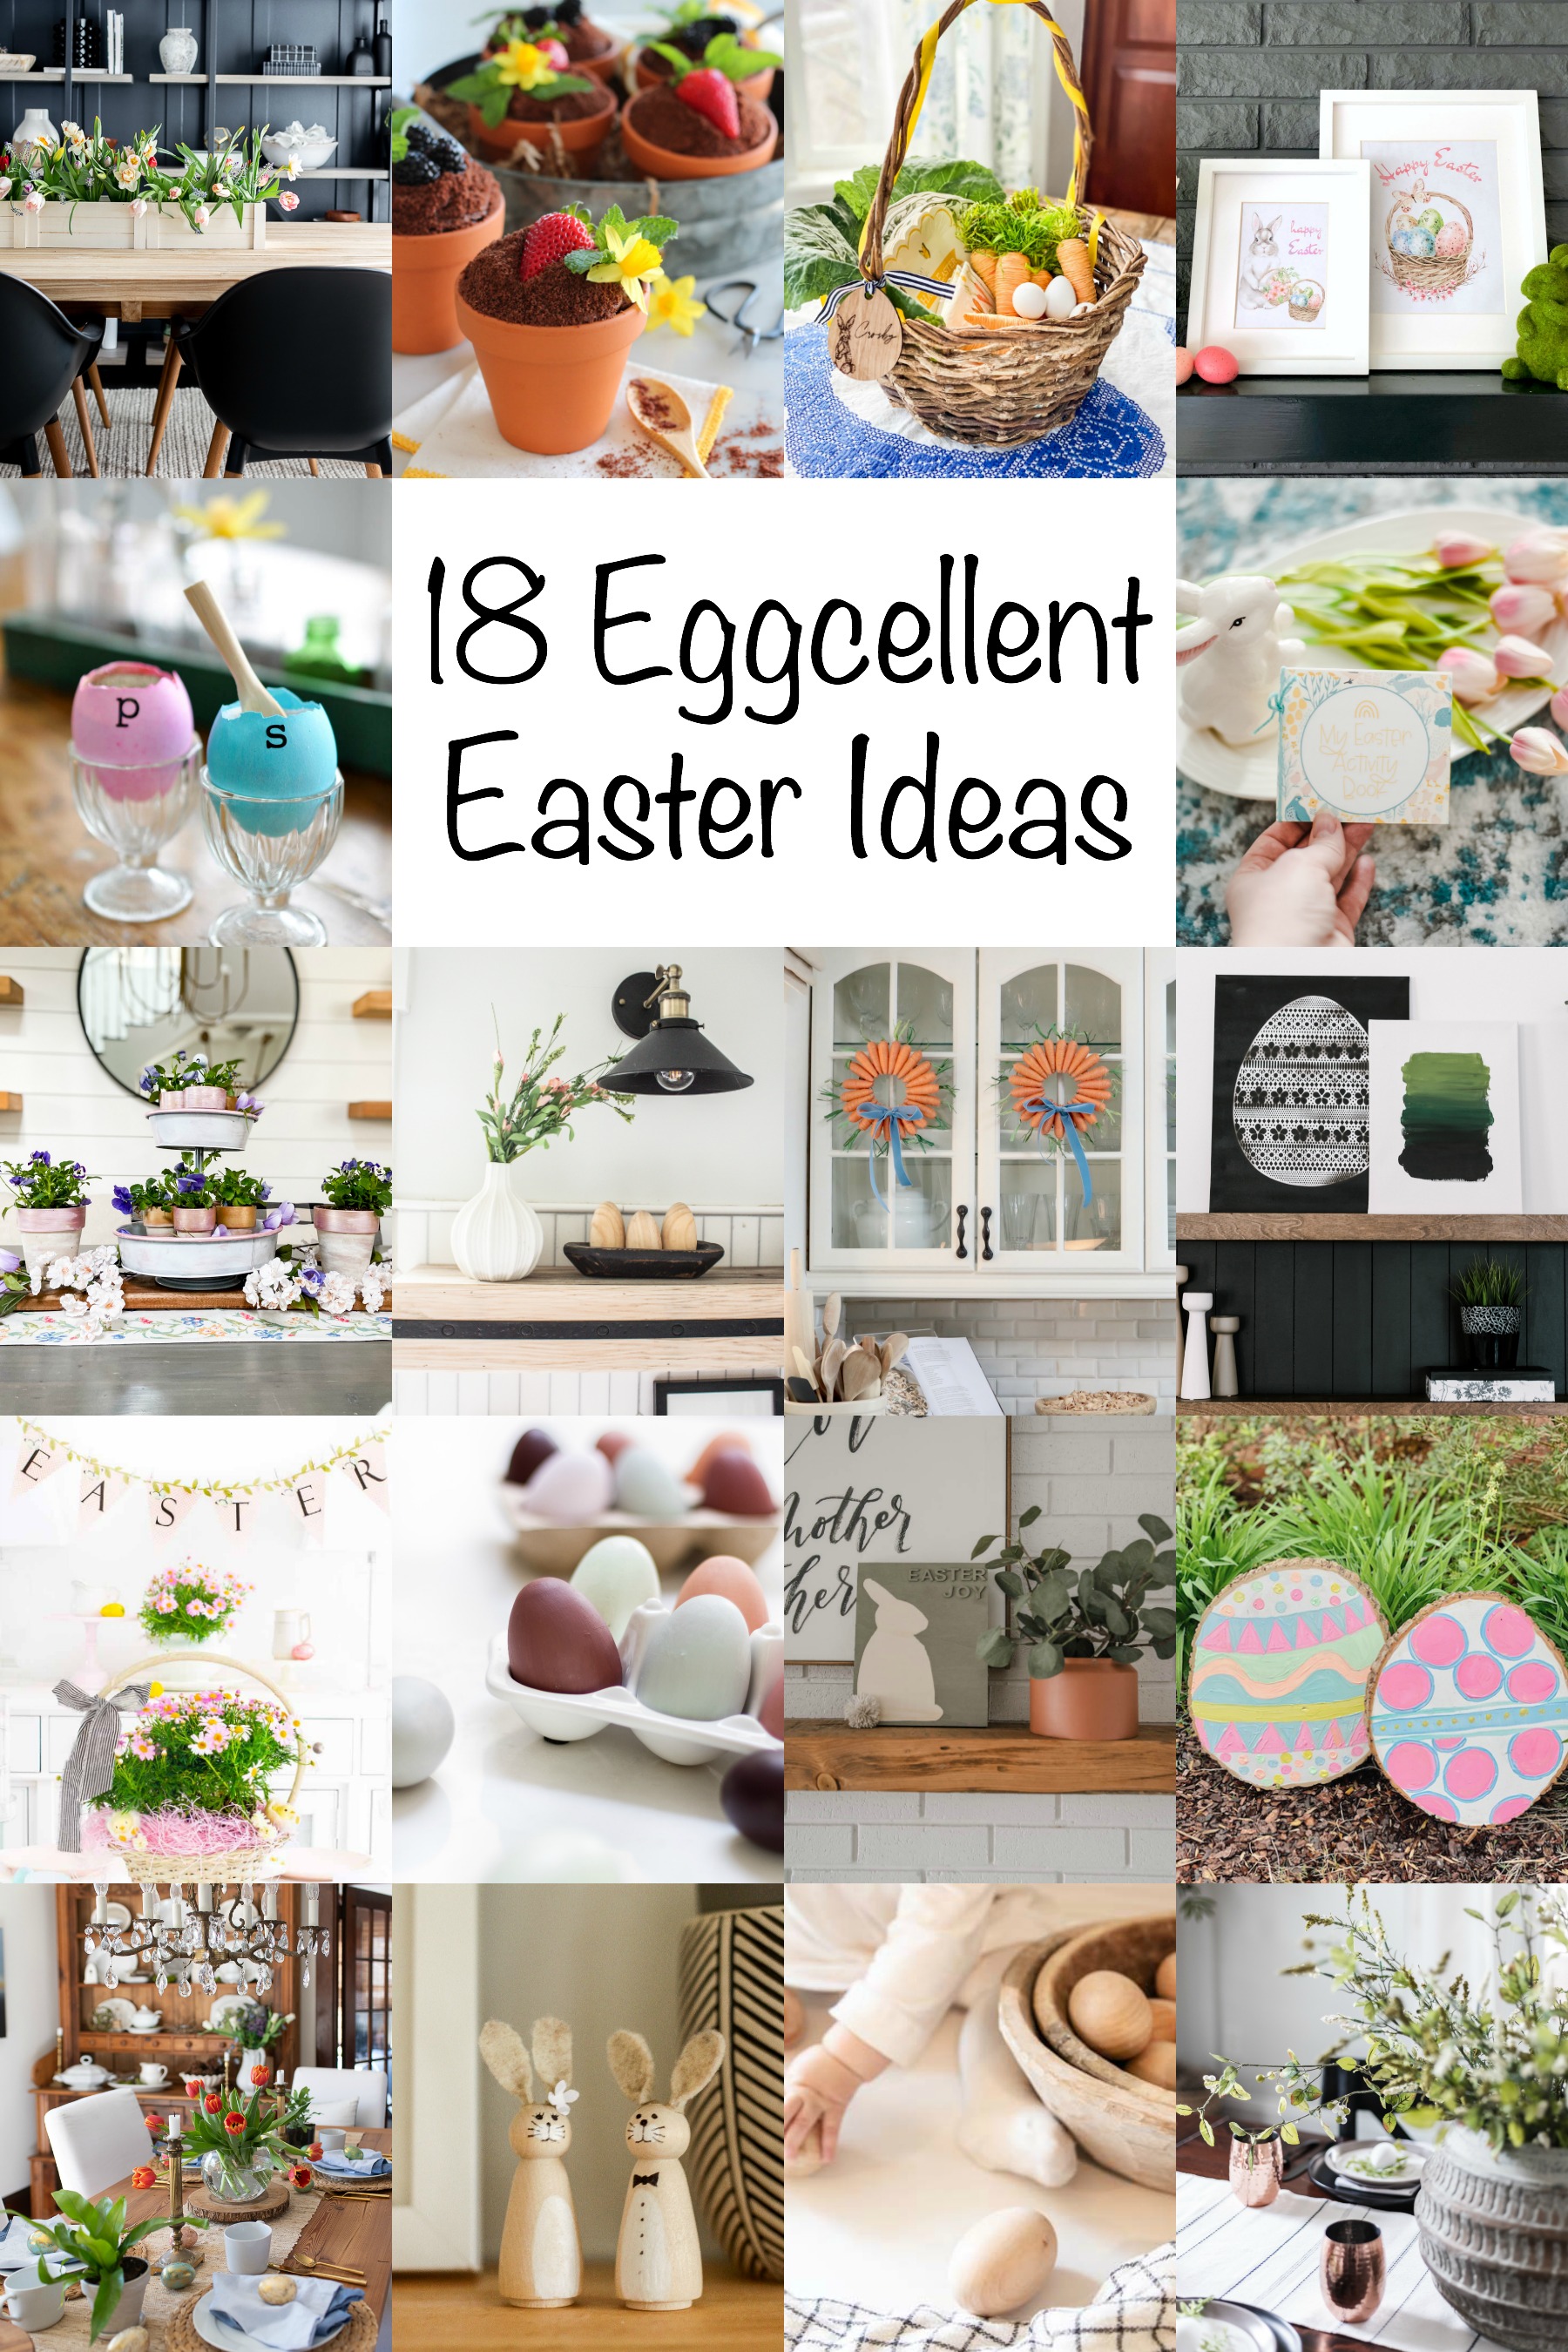 18 Eggcellent Easter Ideas poster.